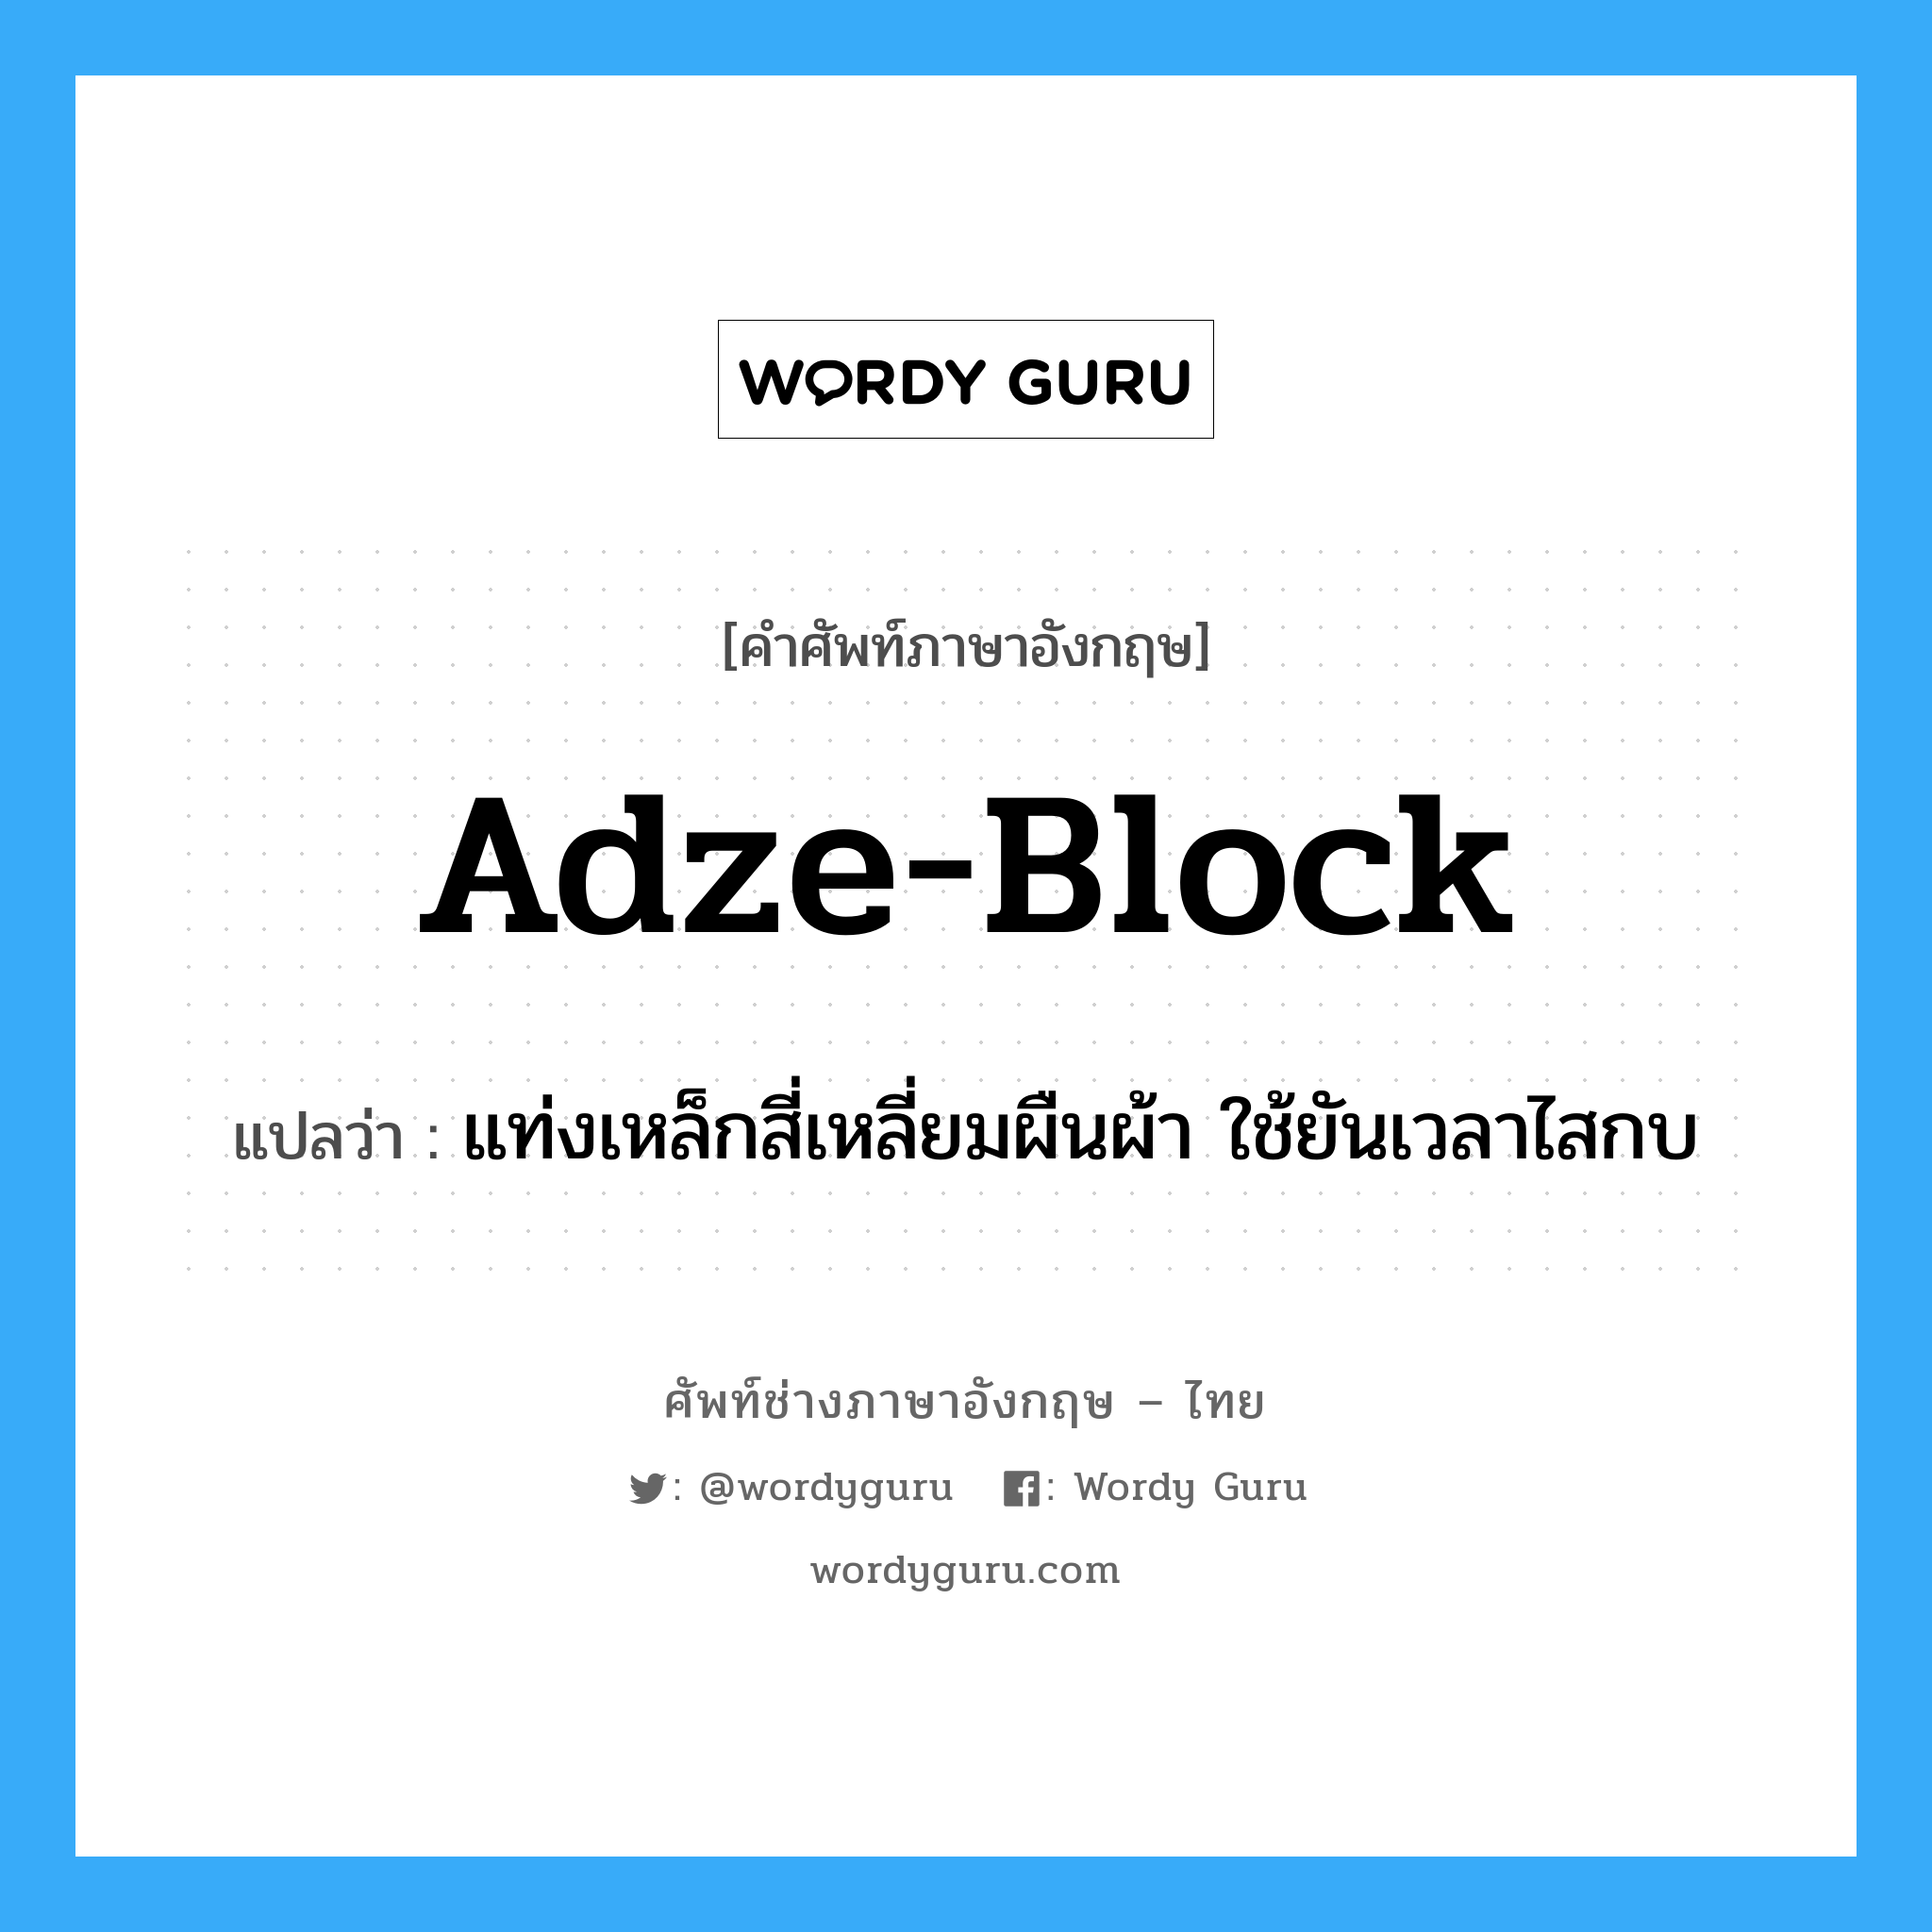 adze-block แปลว่า?, คำศัพท์ช่างภาษาอังกฤษ - ไทย adze-block คำศัพท์ภาษาอังกฤษ adze-block แปลว่า แท่งเหล็กสี่เหลี่ยมผืนผ้า ใช้ยันเวลาไสกบ